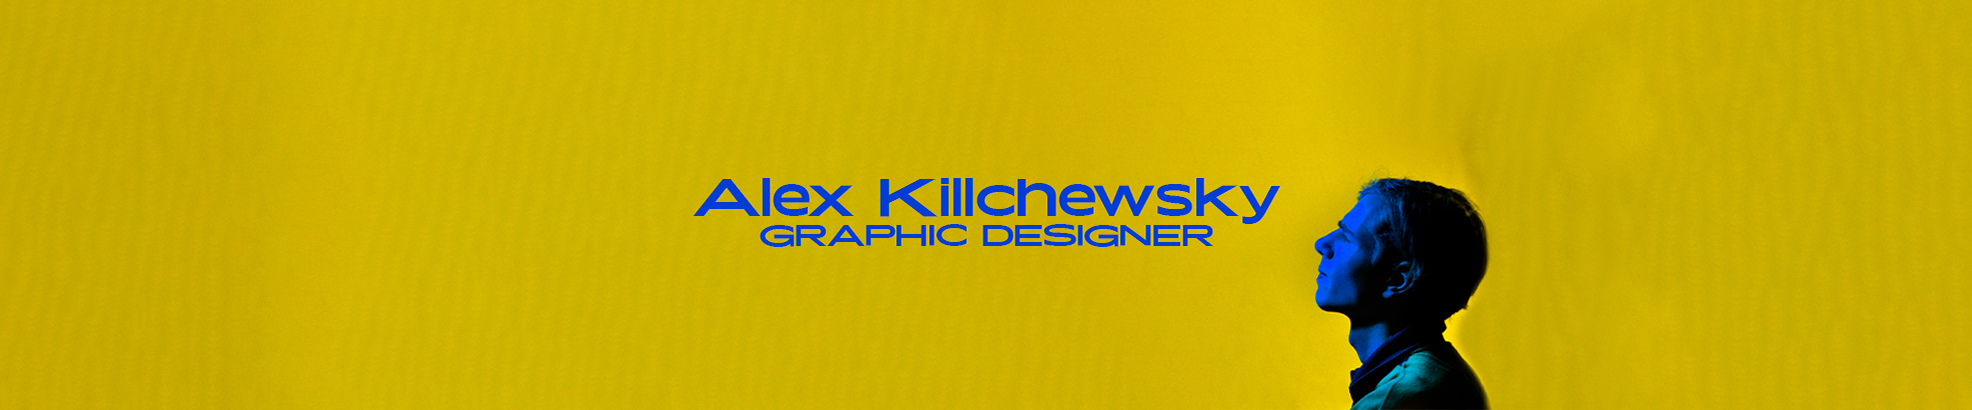 Banner profilu uživatele Alex Killchewsky